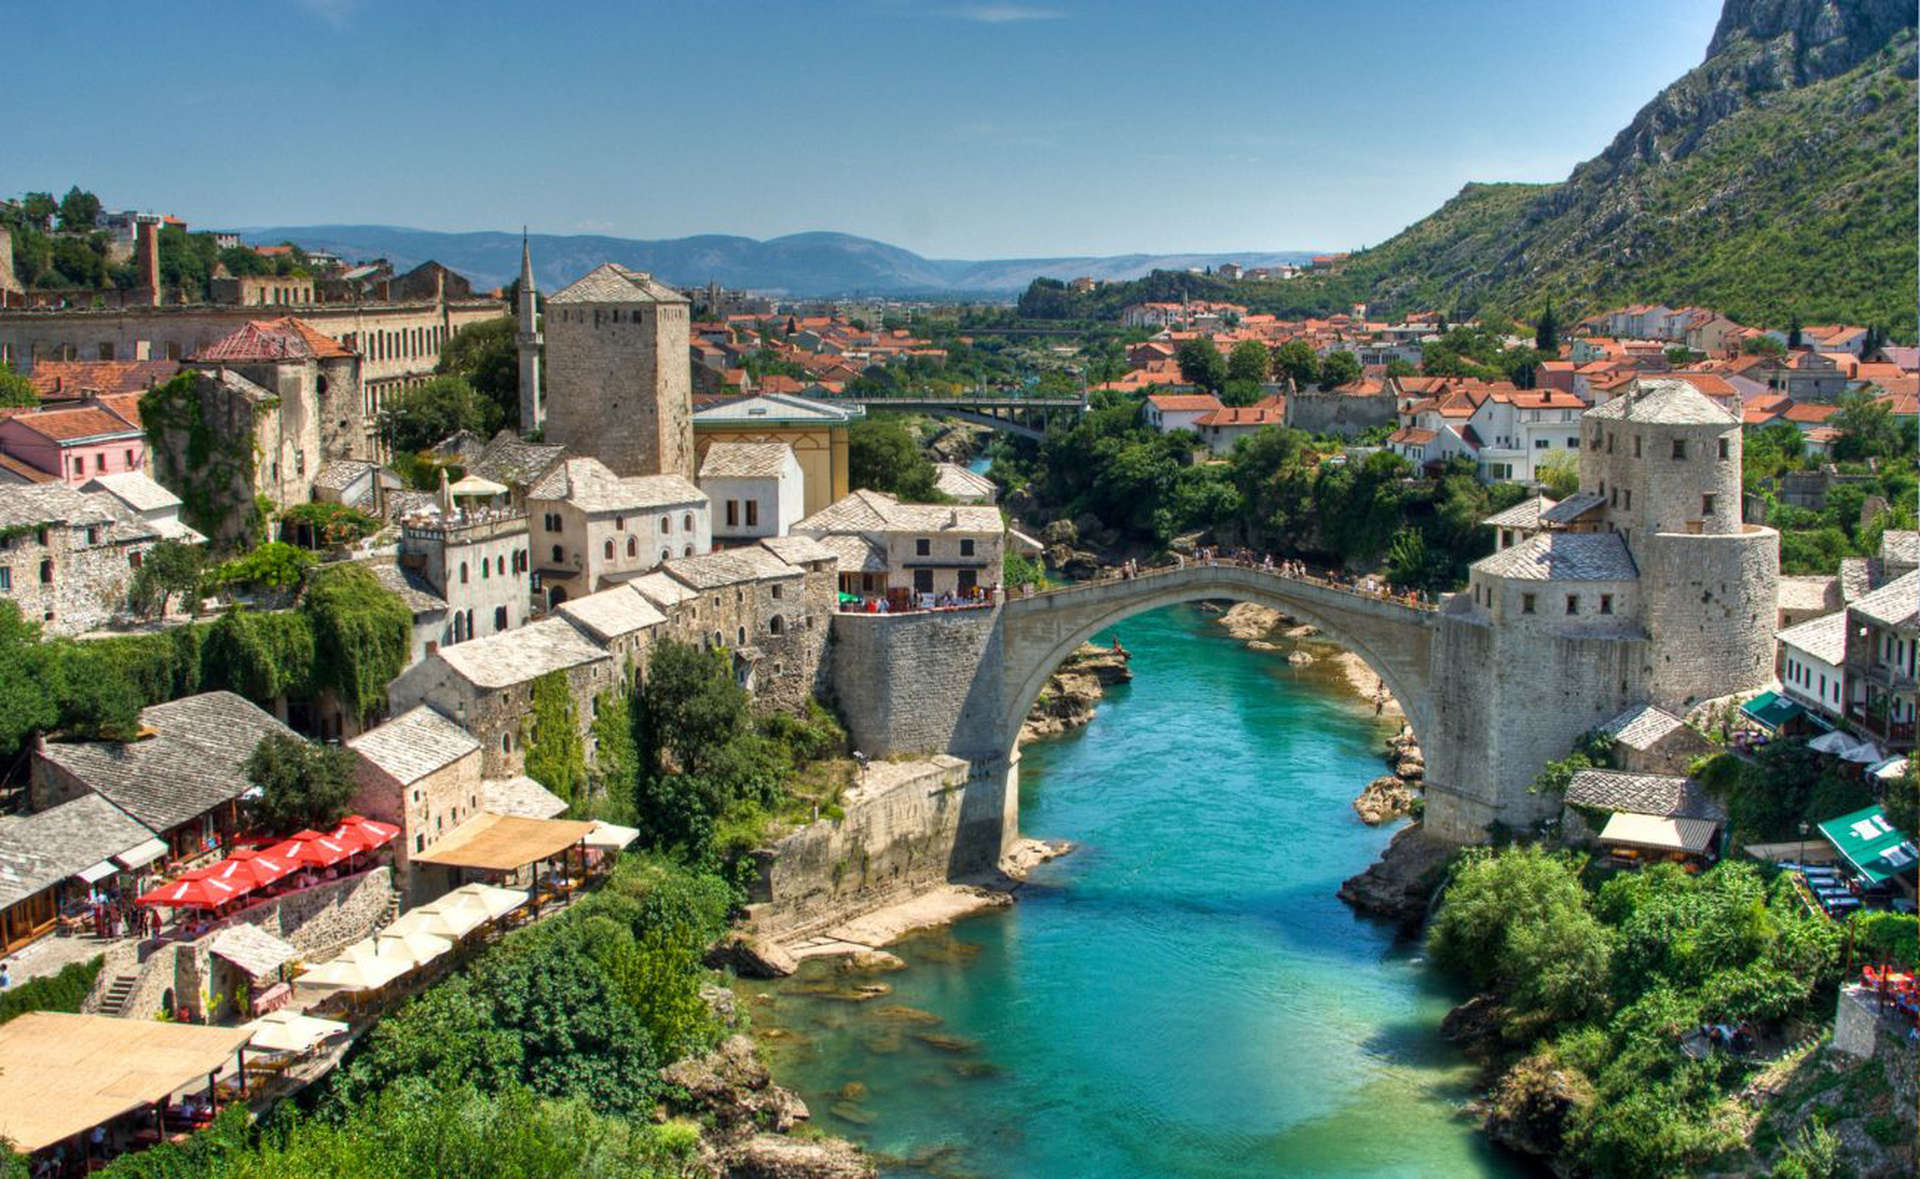 Mostar ma bajkową atmosferę